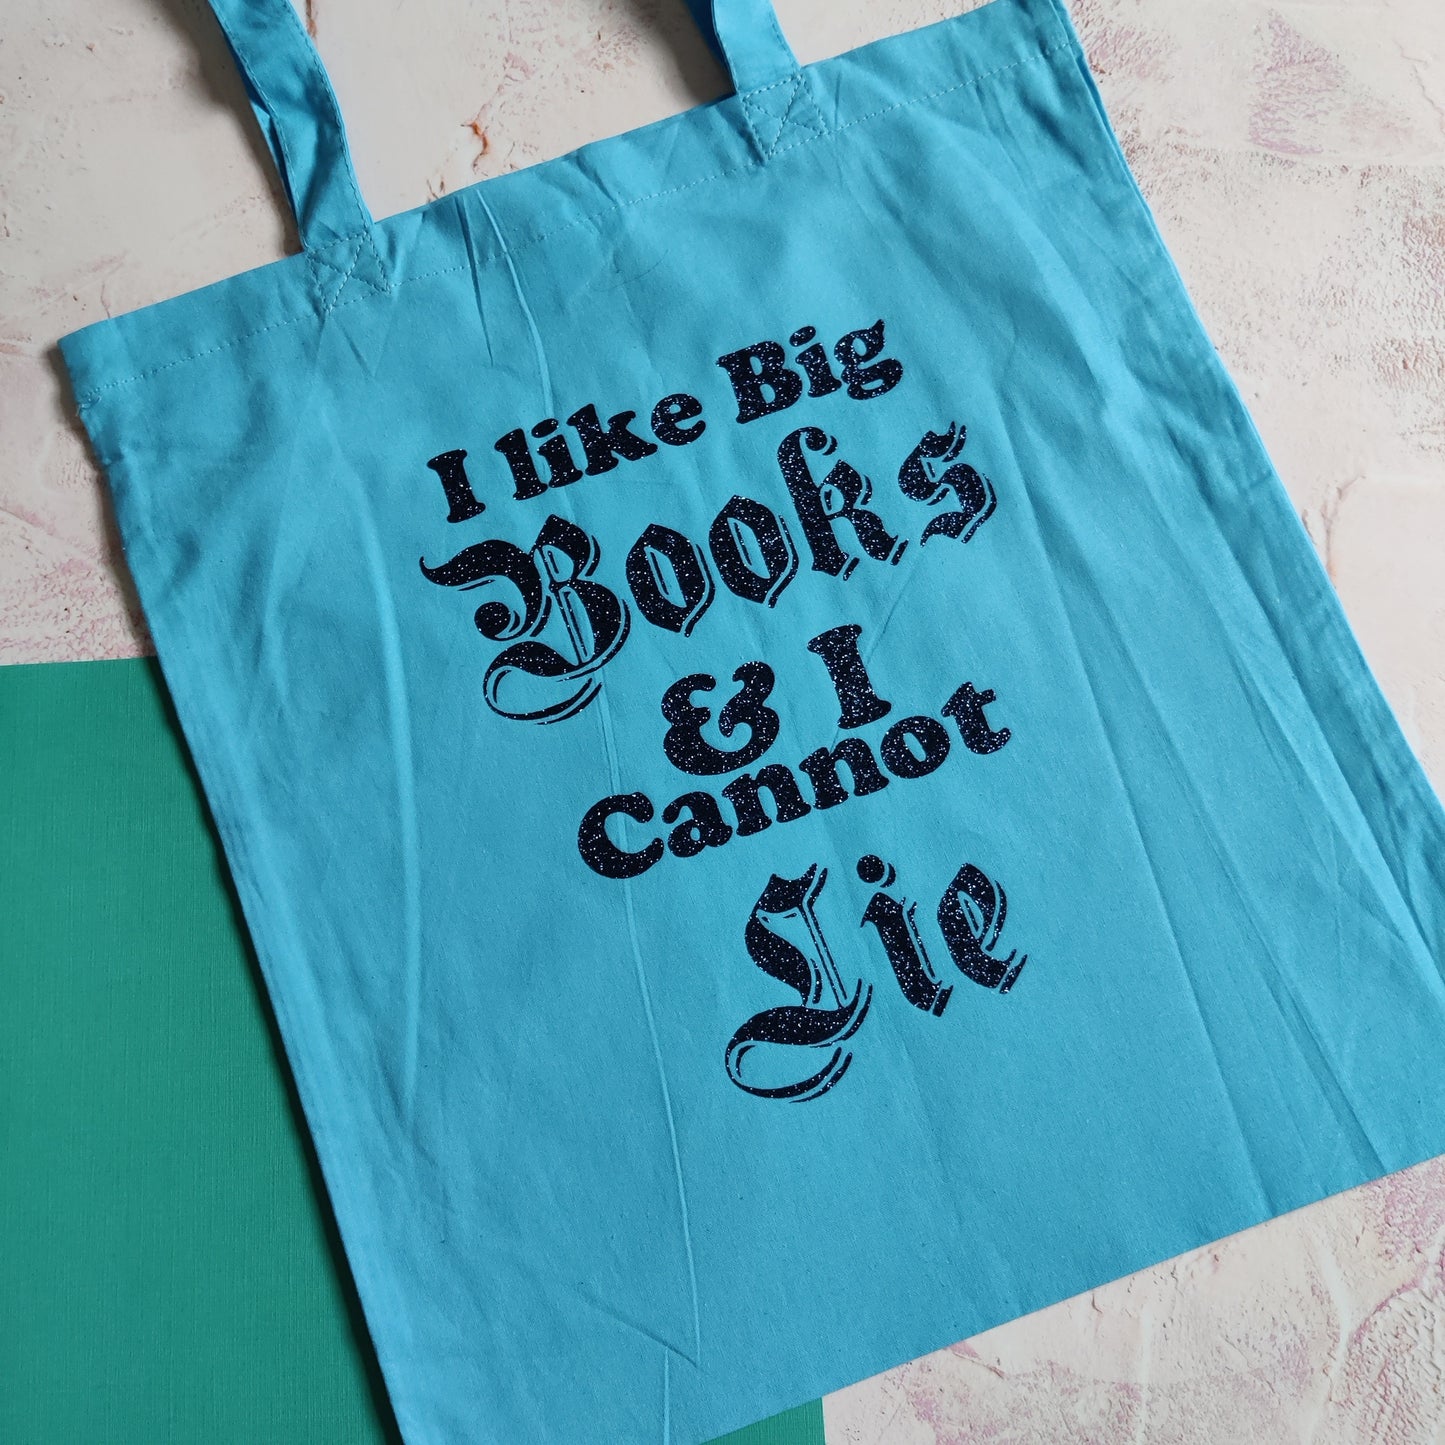 I Like Big Books & I Cannot Lie Tote Bag